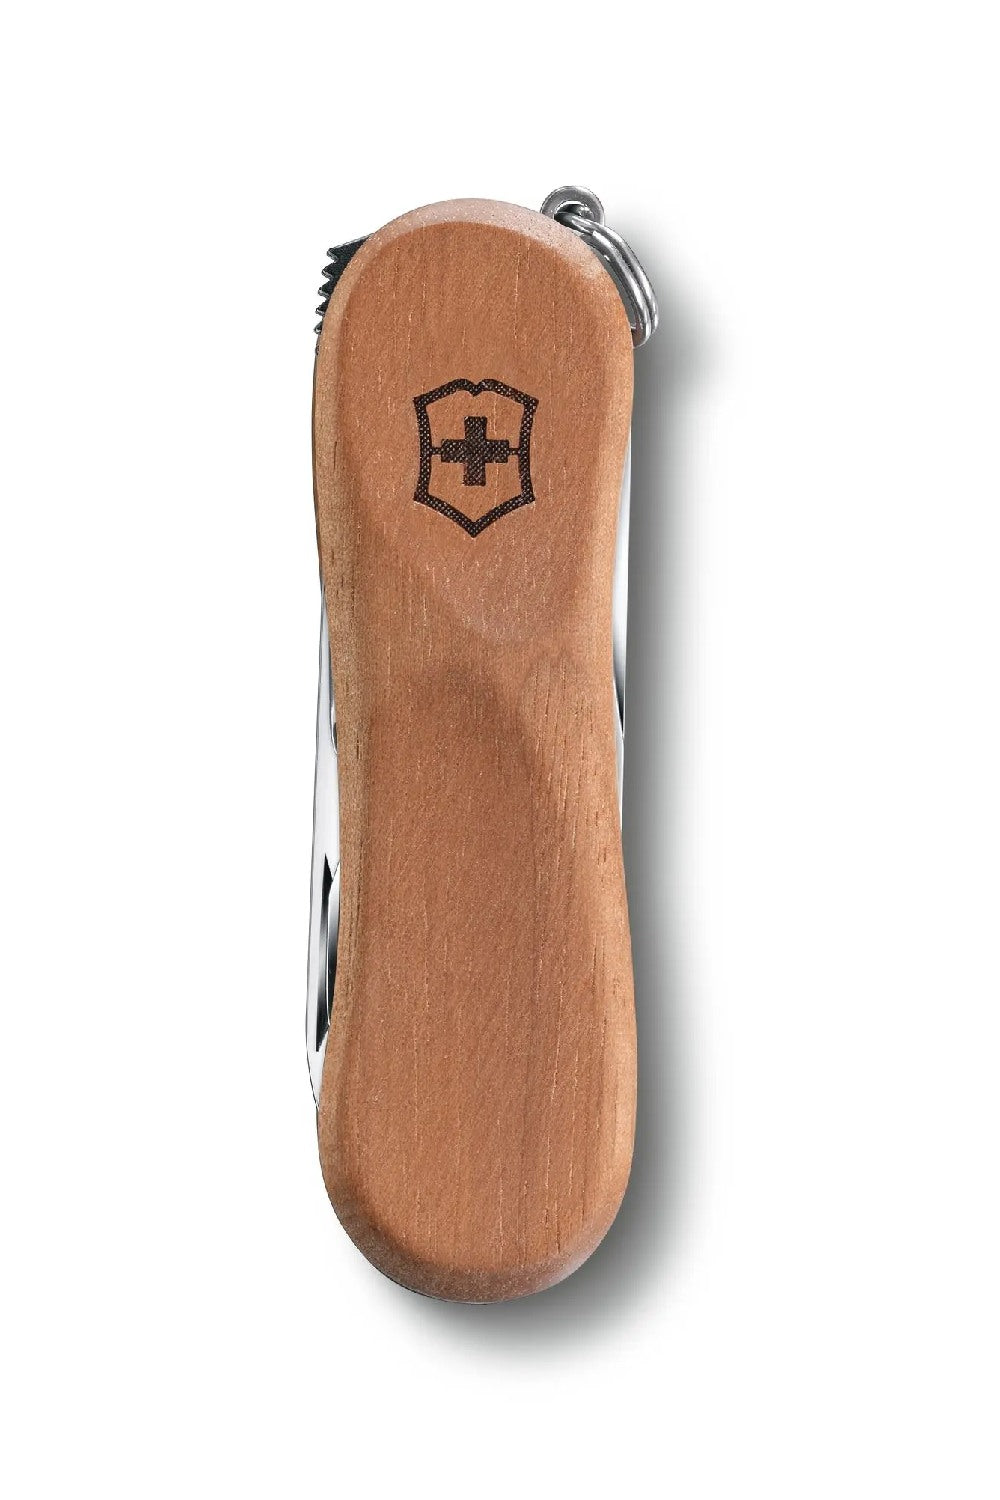 Victorinox Nail Clip Wood 580 Swiss Army Small Pocket Knife in Walnut Wood